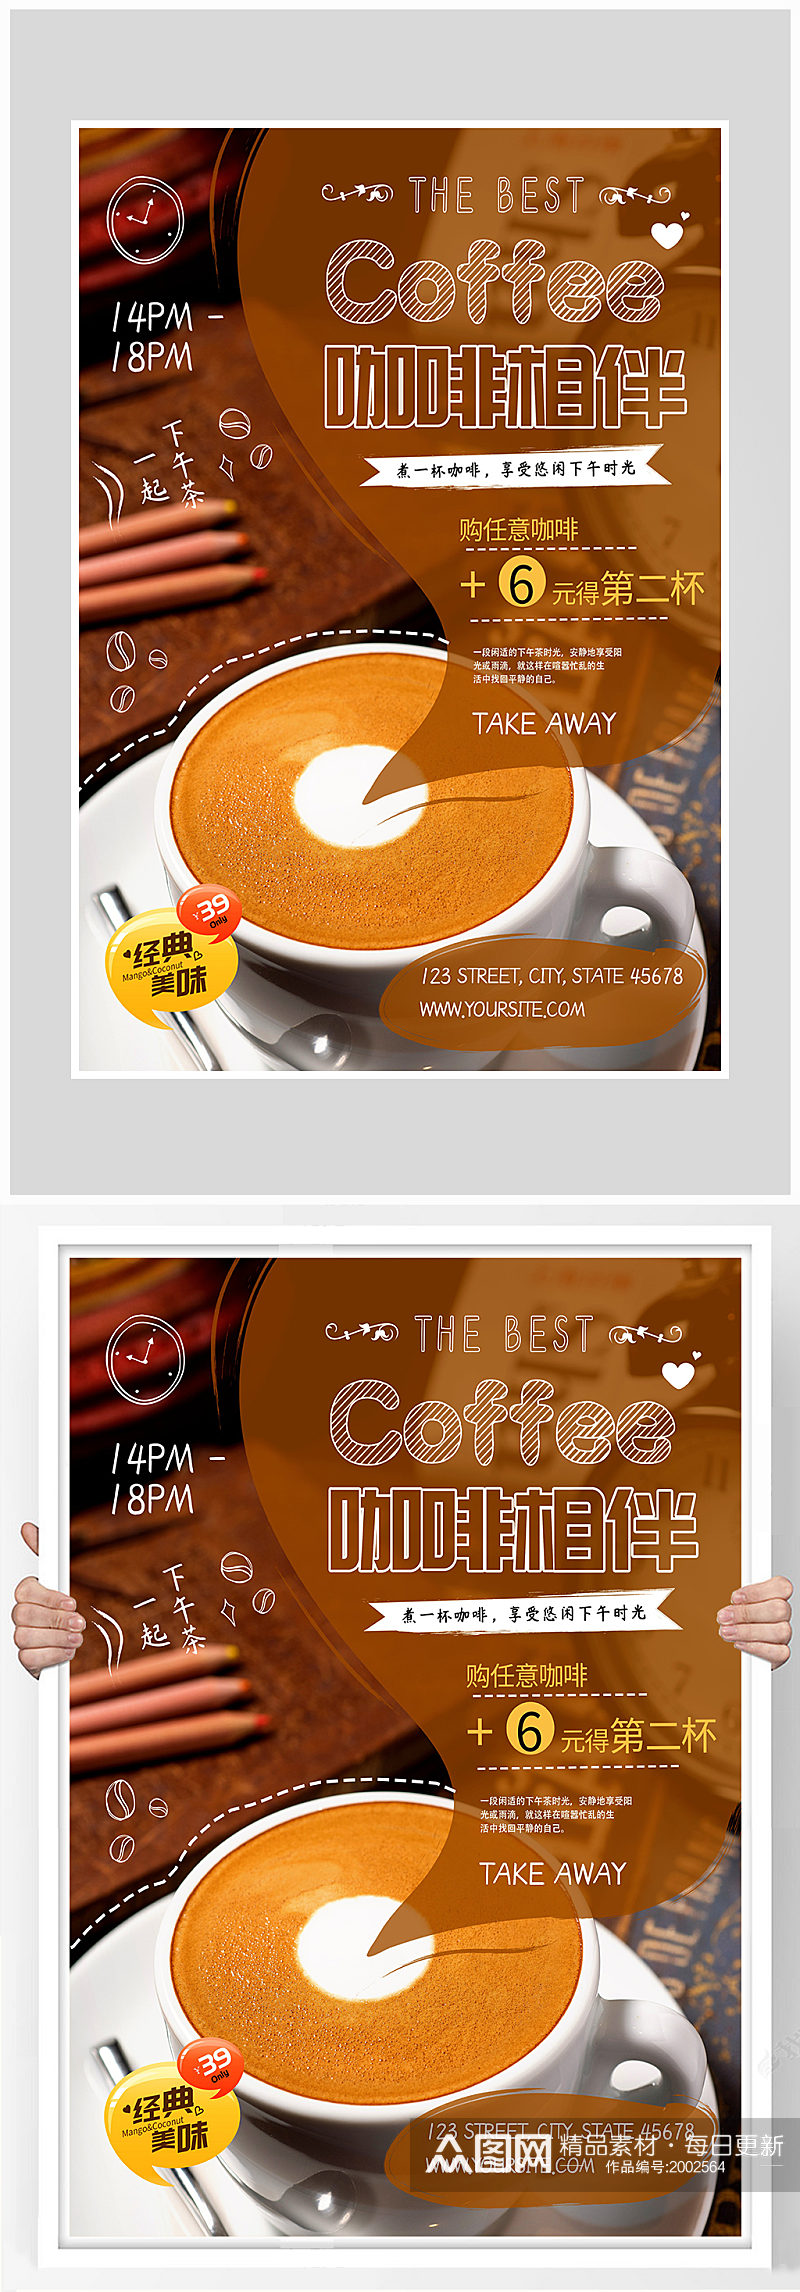 创意质感奶茶餐点咖啡海报设计素材